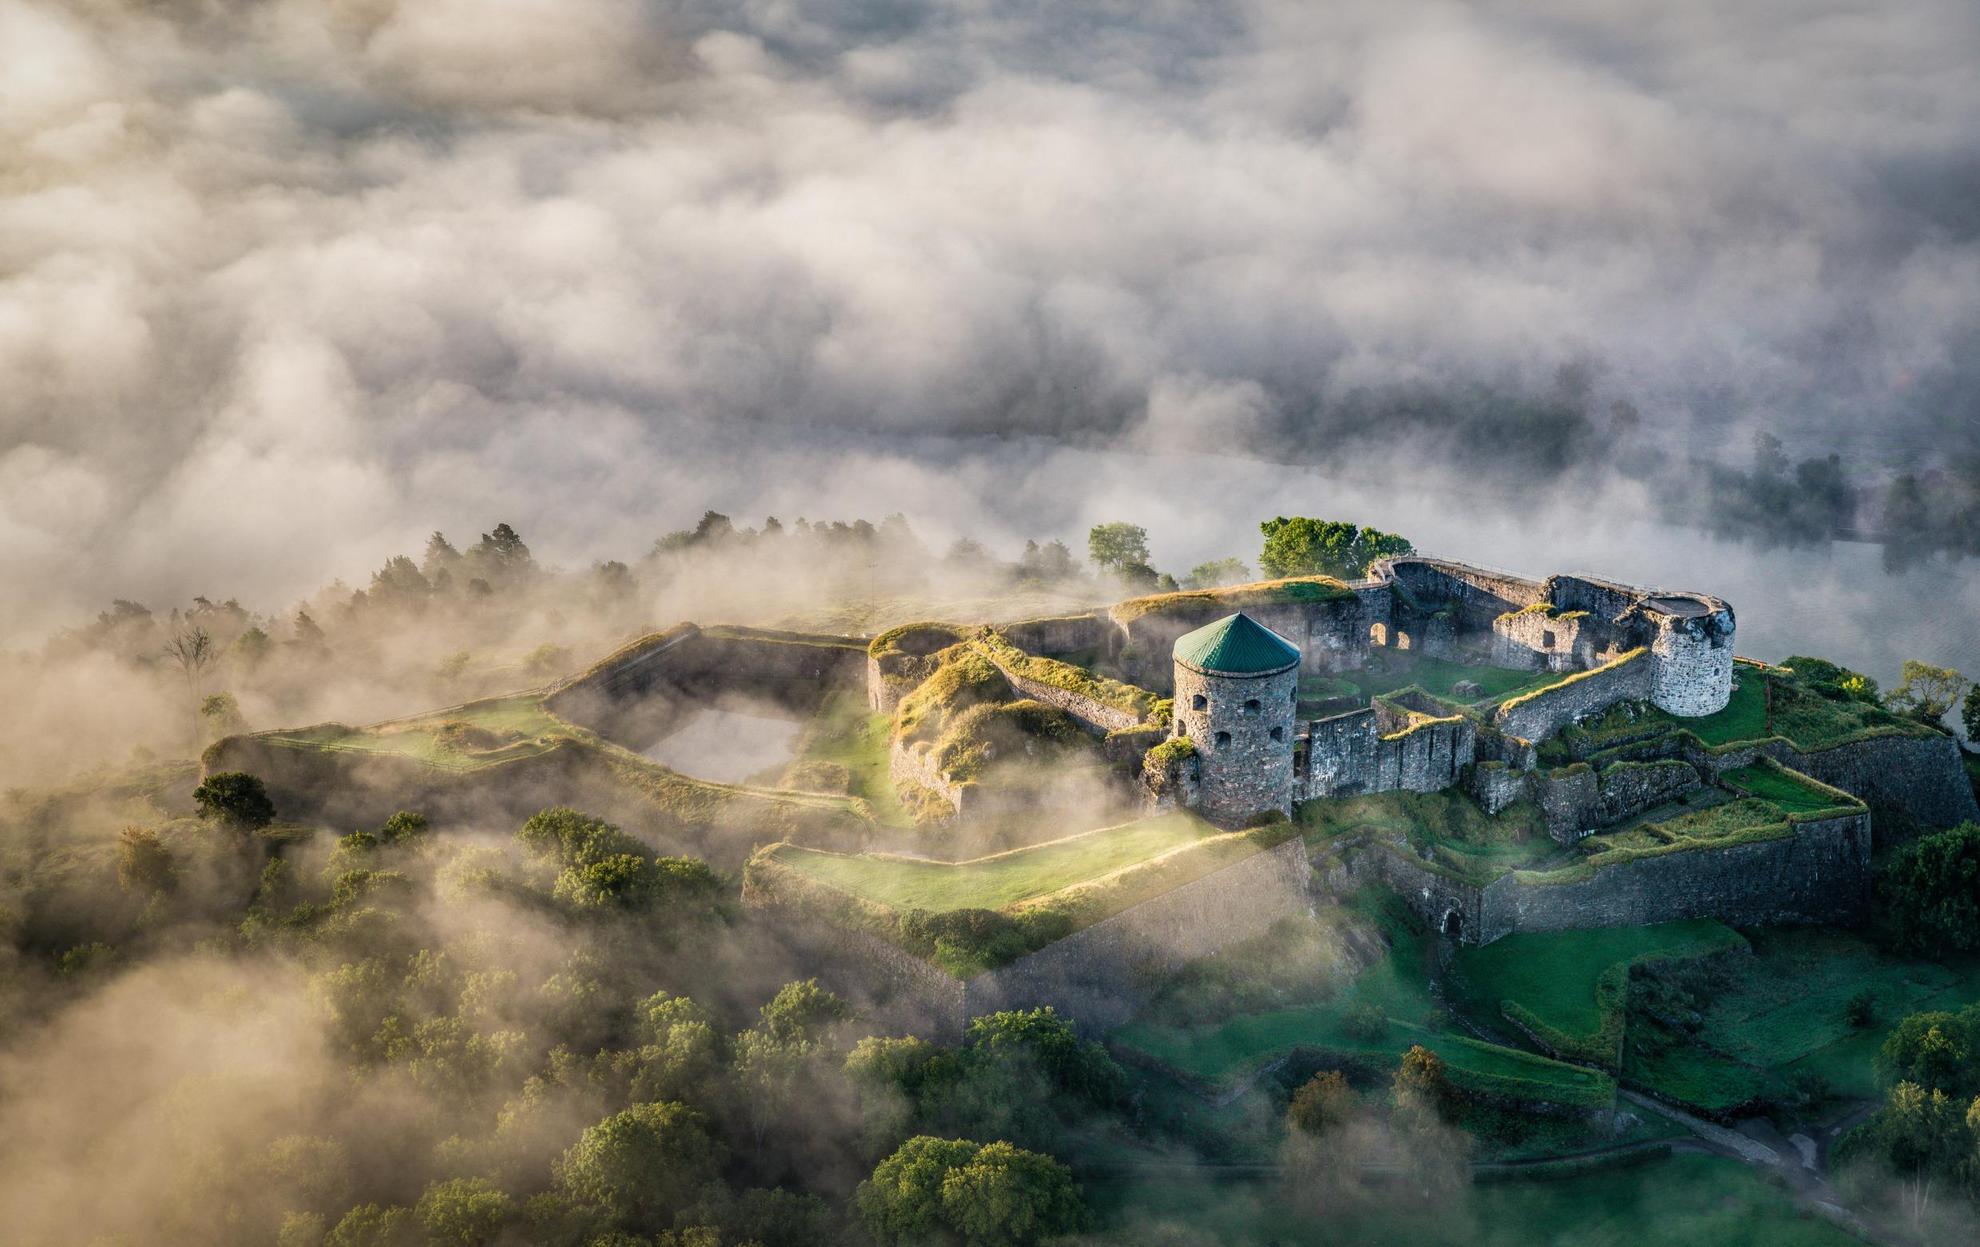 Luftbild auf einen Hügel, auf dem eine Festung mit Türmen und Mauern zu sehen ist. Wolken und Nebel ziehen über die Landschaft.